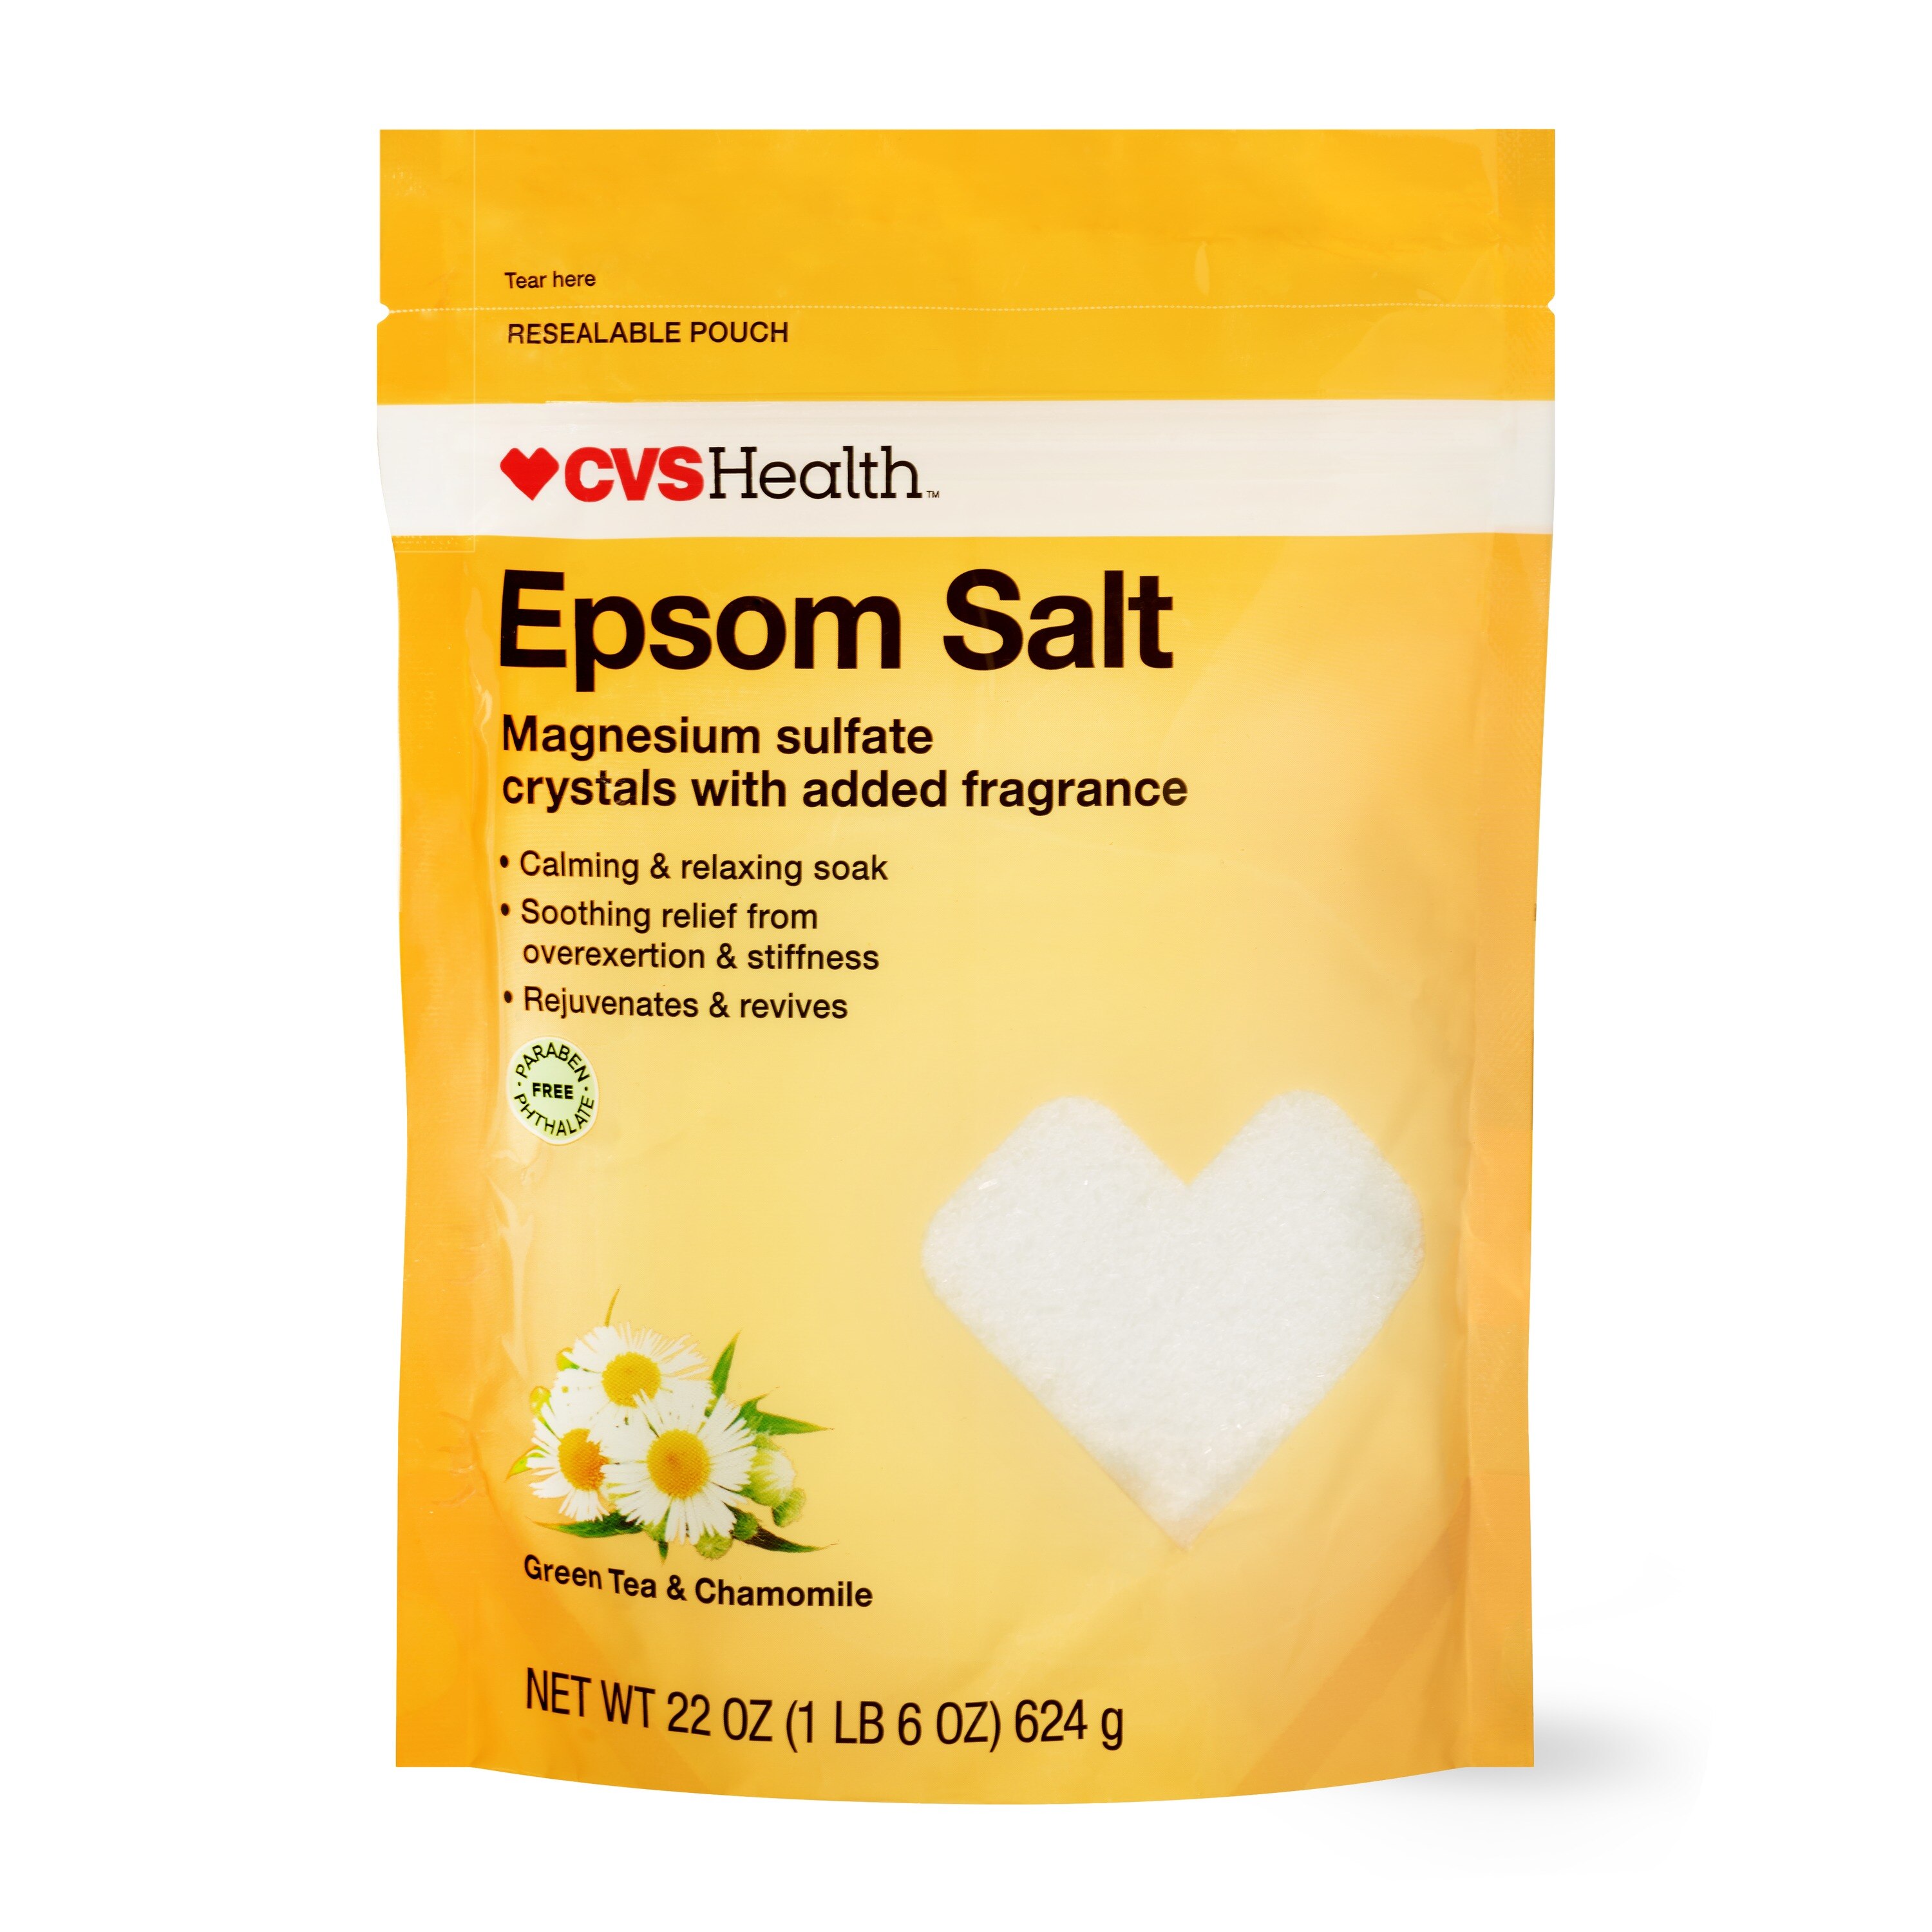  CVS Green Tea & Chamomille Epsom Salt, 22 OZ 